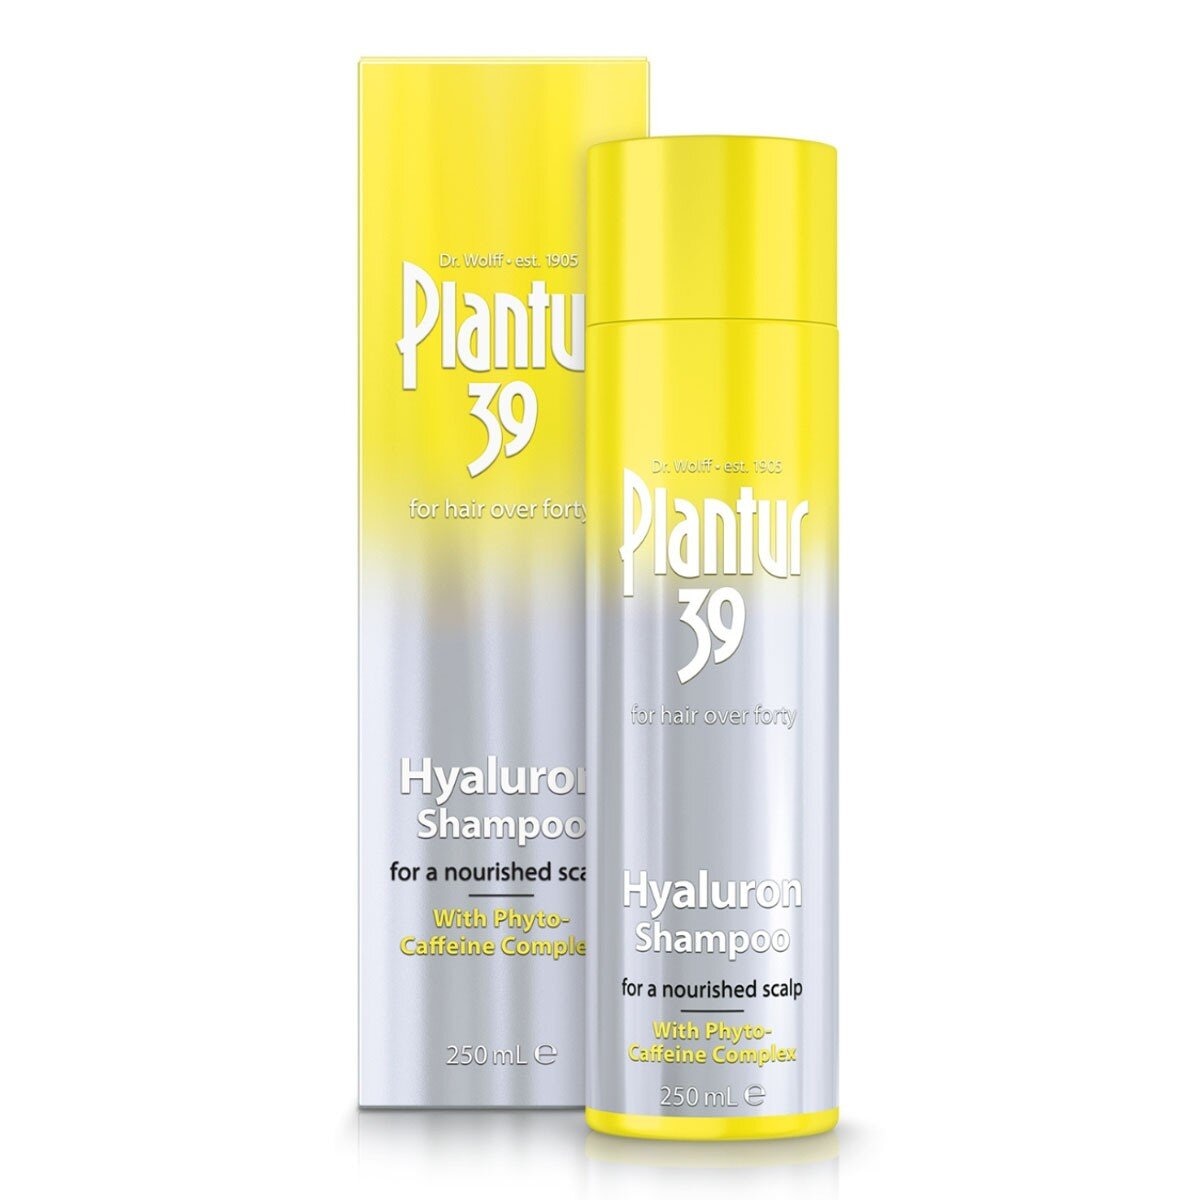 Plantur 39 玻尿酸咖啡因洗髮露 250毫升 X 2入 + 頭髮液組合 200毫升 X 1入